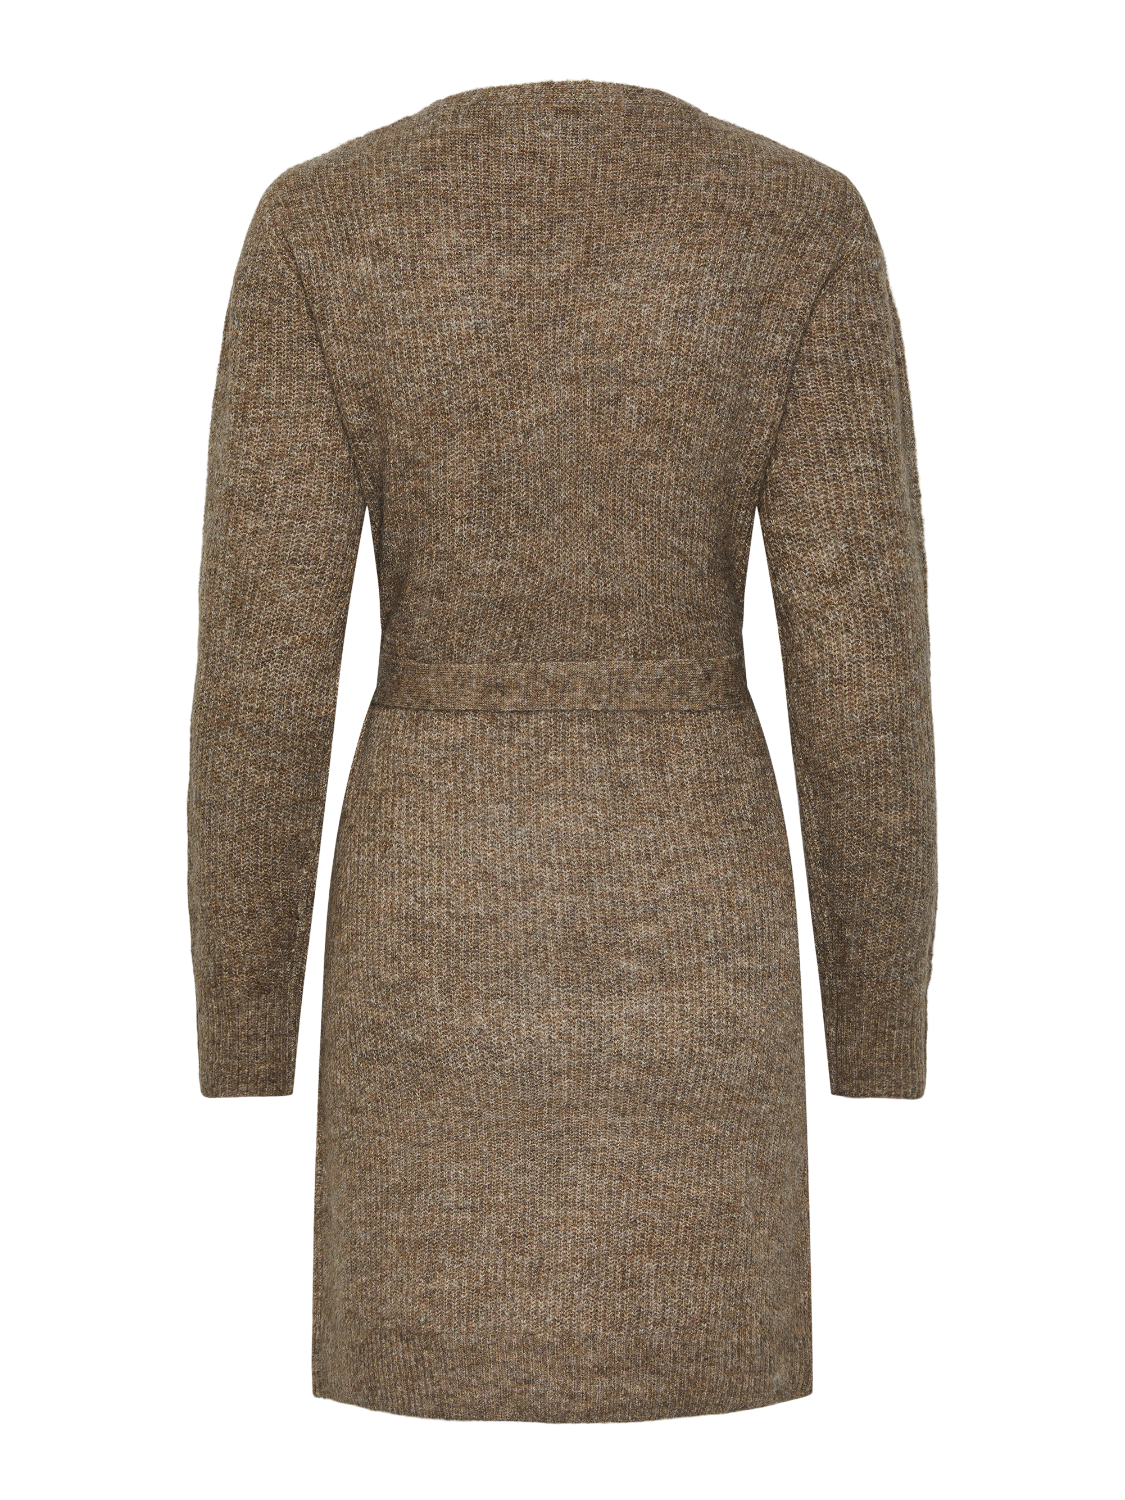 PCELLEN Dress - Fossil